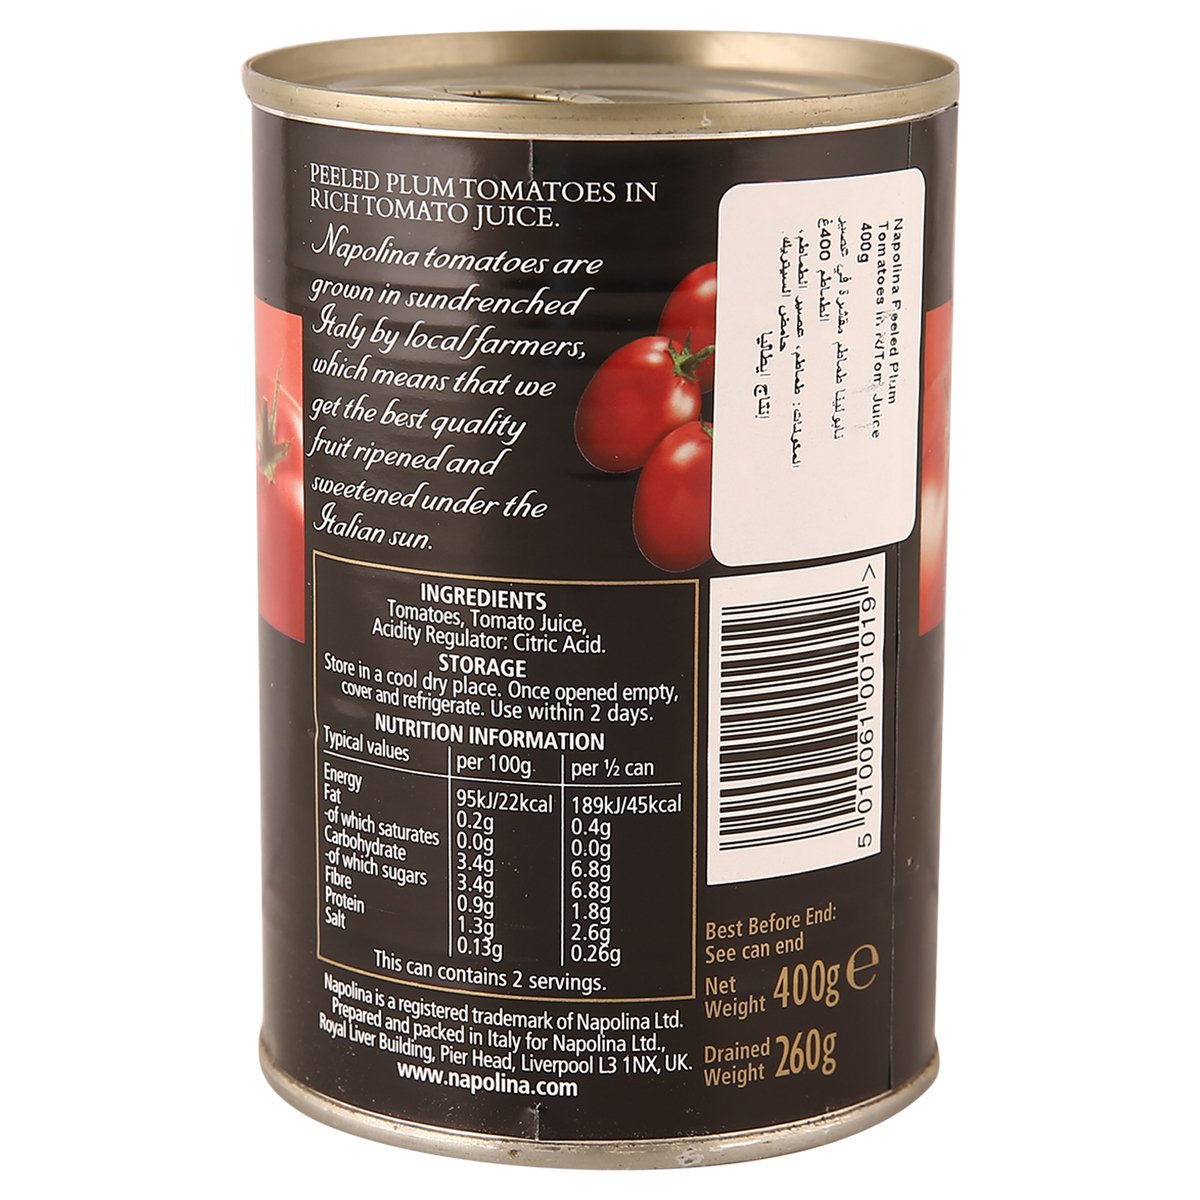 نابولينا طماطم مقشر في عصير الطماطم 400 جم